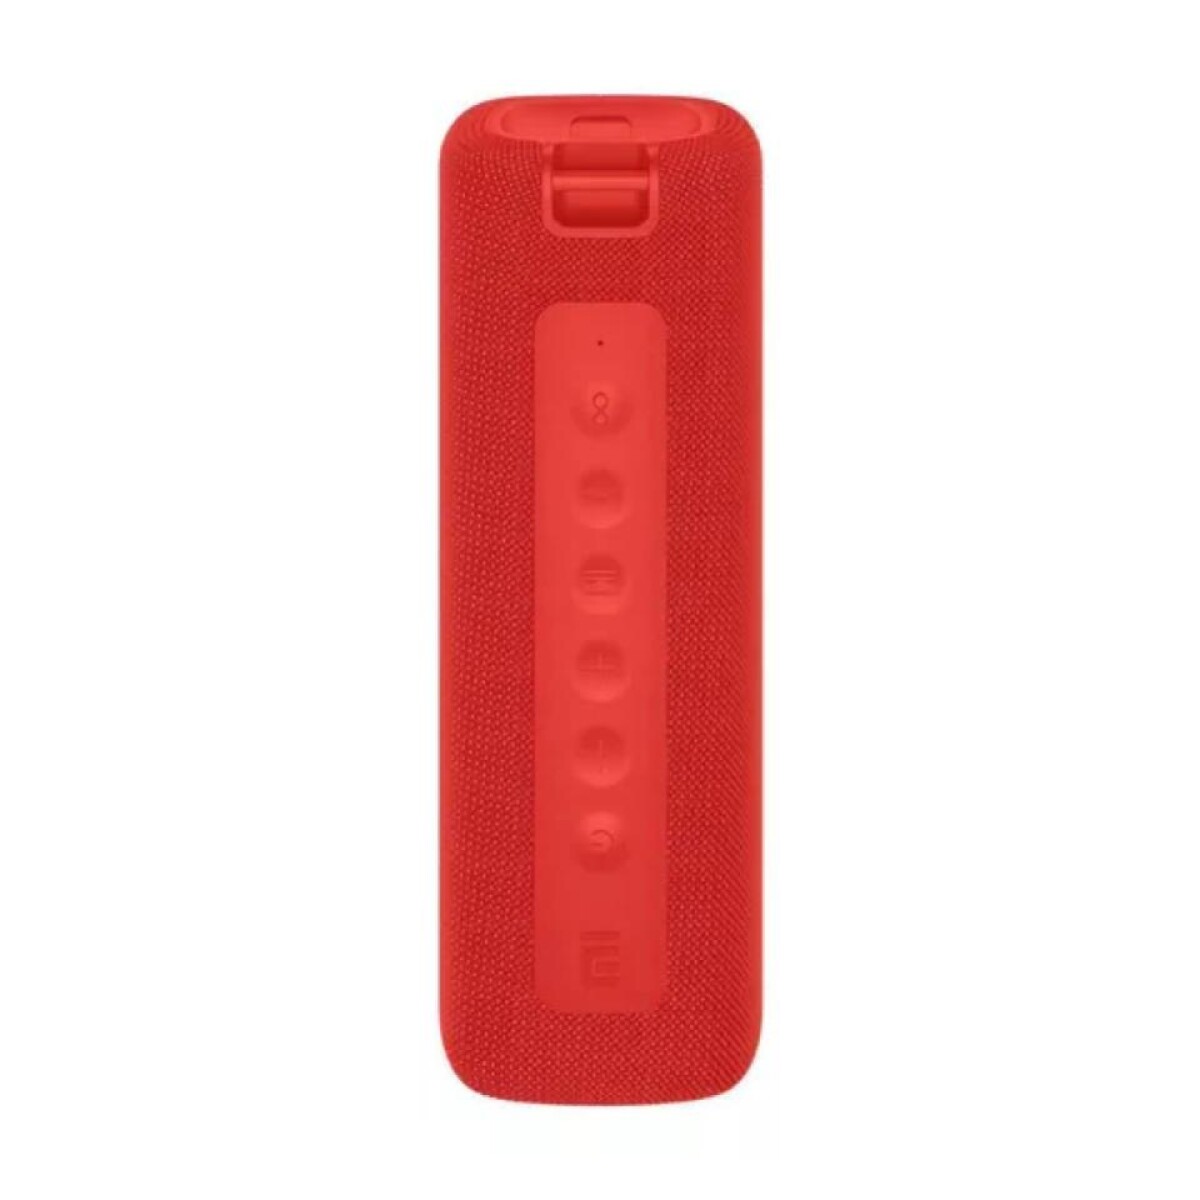 Parlante Inalámbrico XIAOMI Portable BT Batería 13H IPX7 - Red 